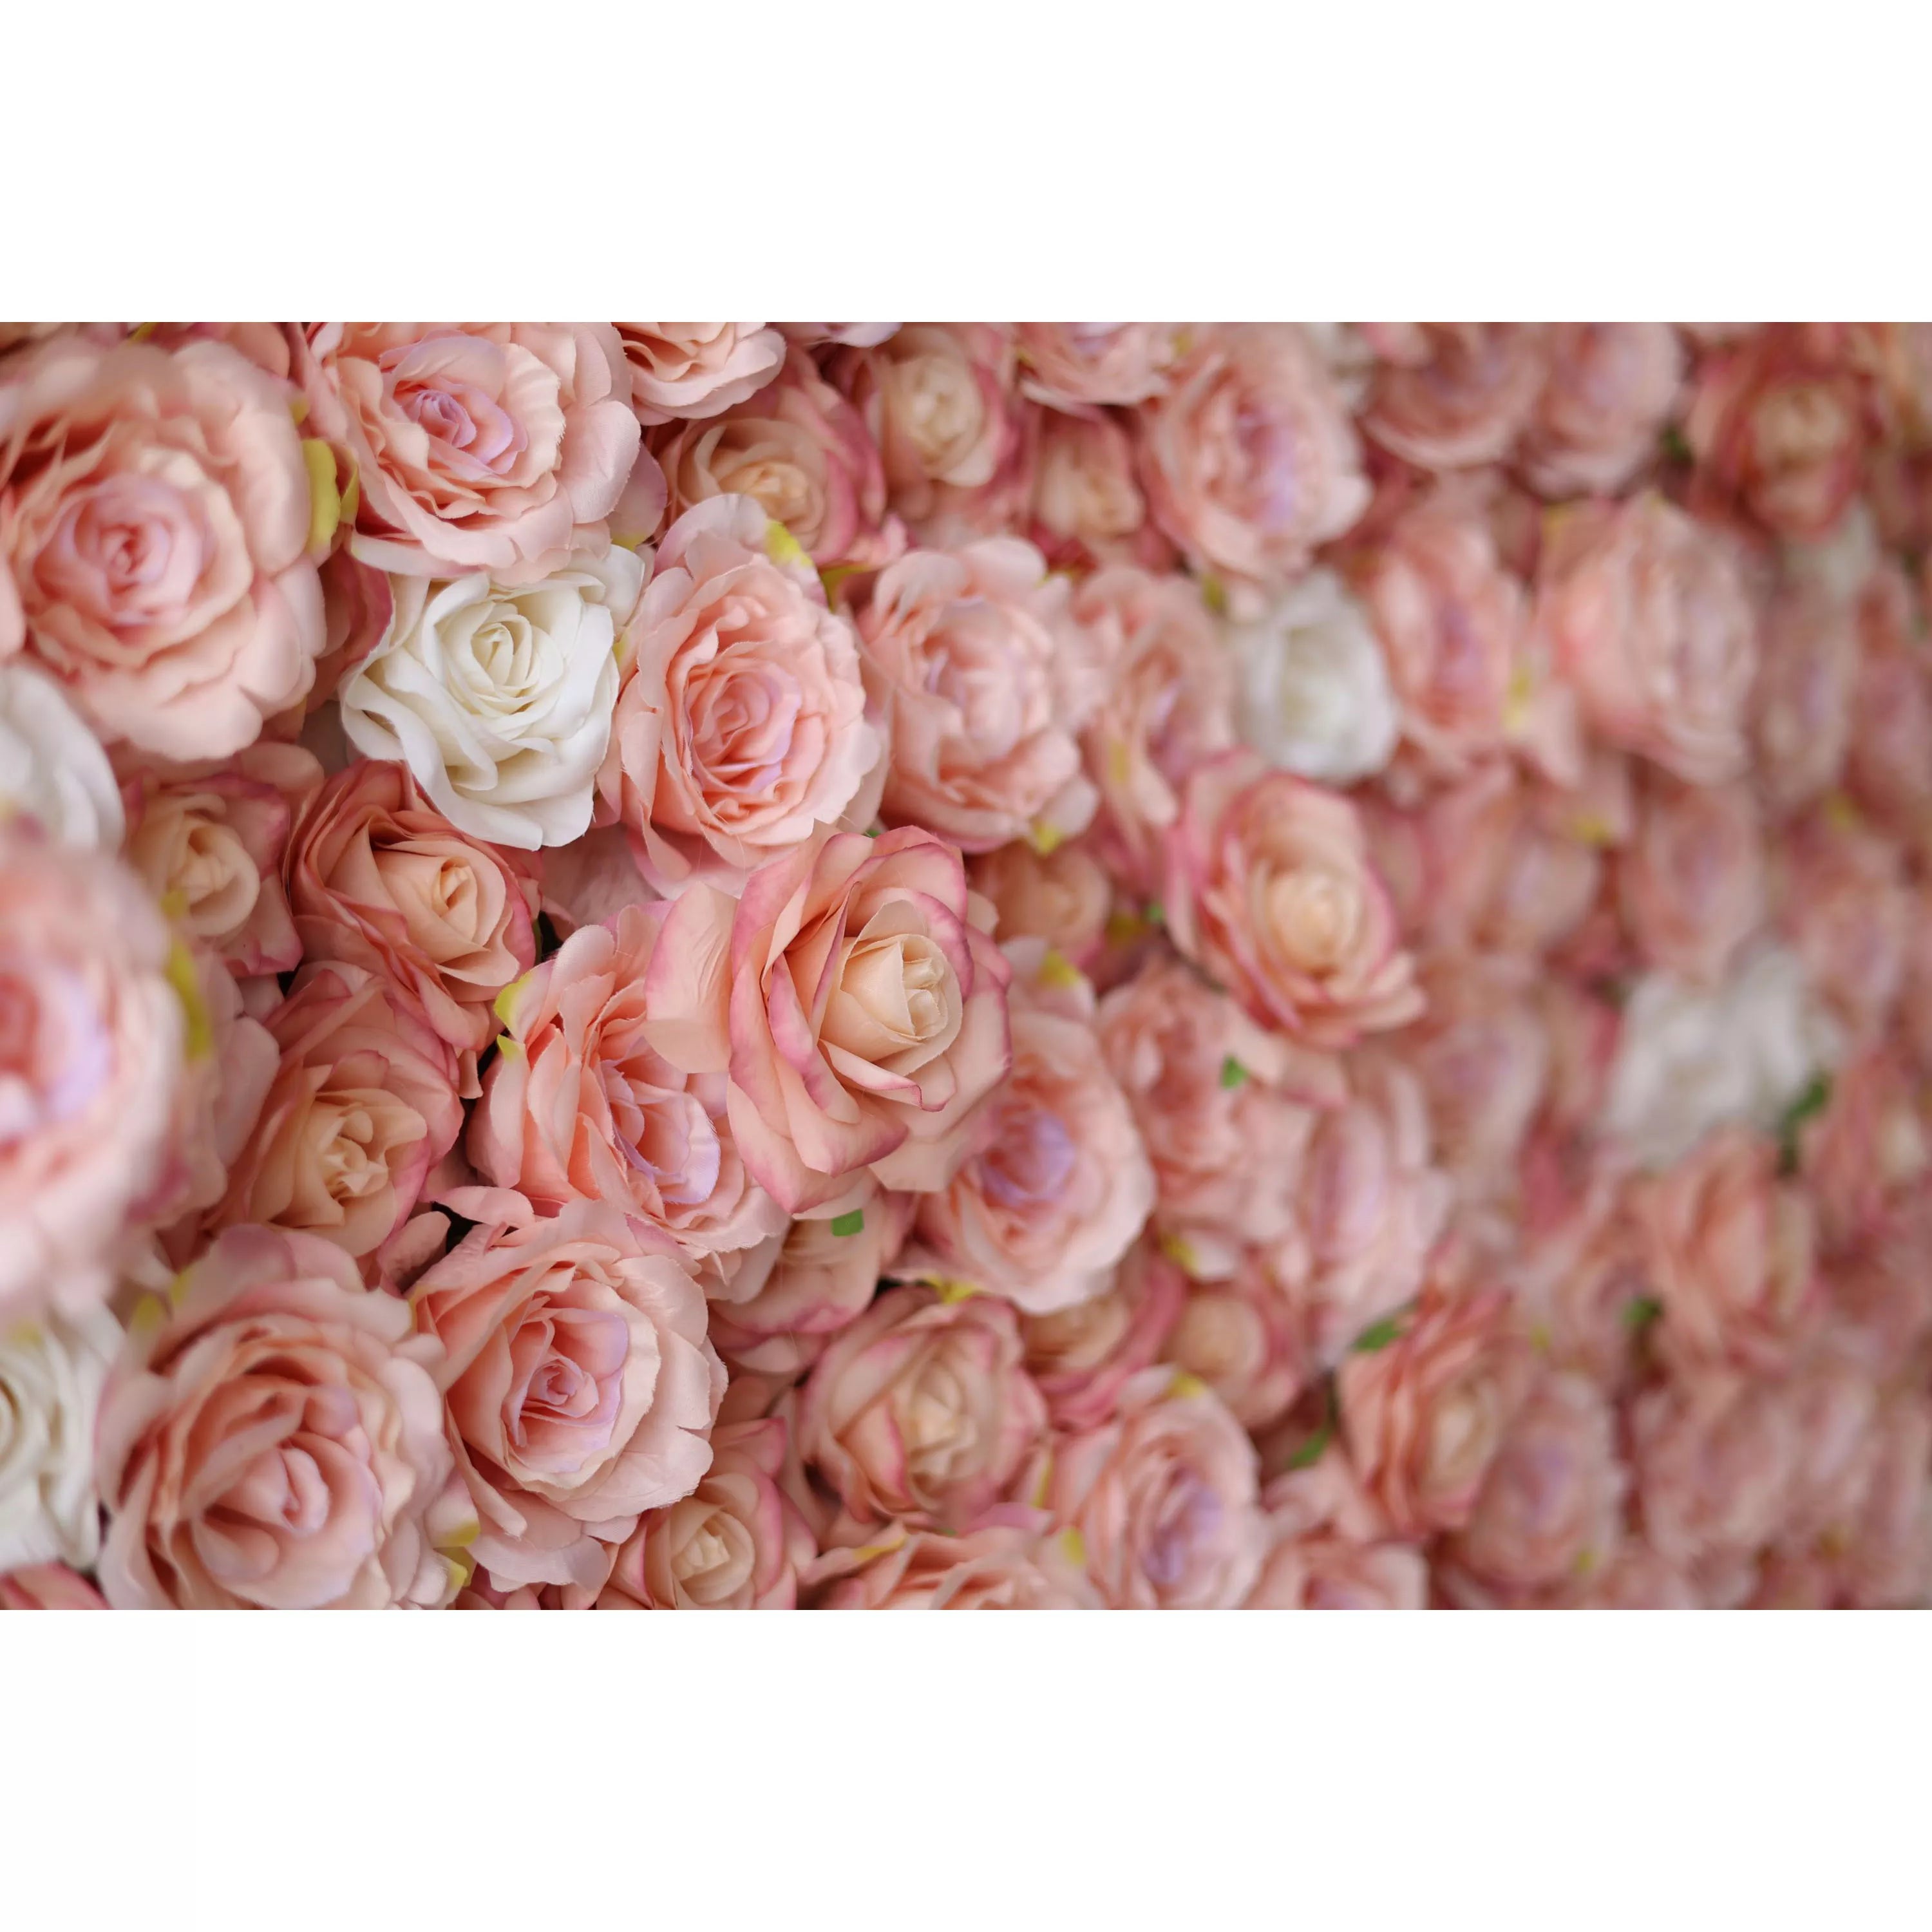 زهرة الفالار لفة النسيج الاصطناعي الوردي والشرقي الوردي والأبيض جدار زهرة خلفية الزفاف ، ديكور حزب الأزهار ، الحدث